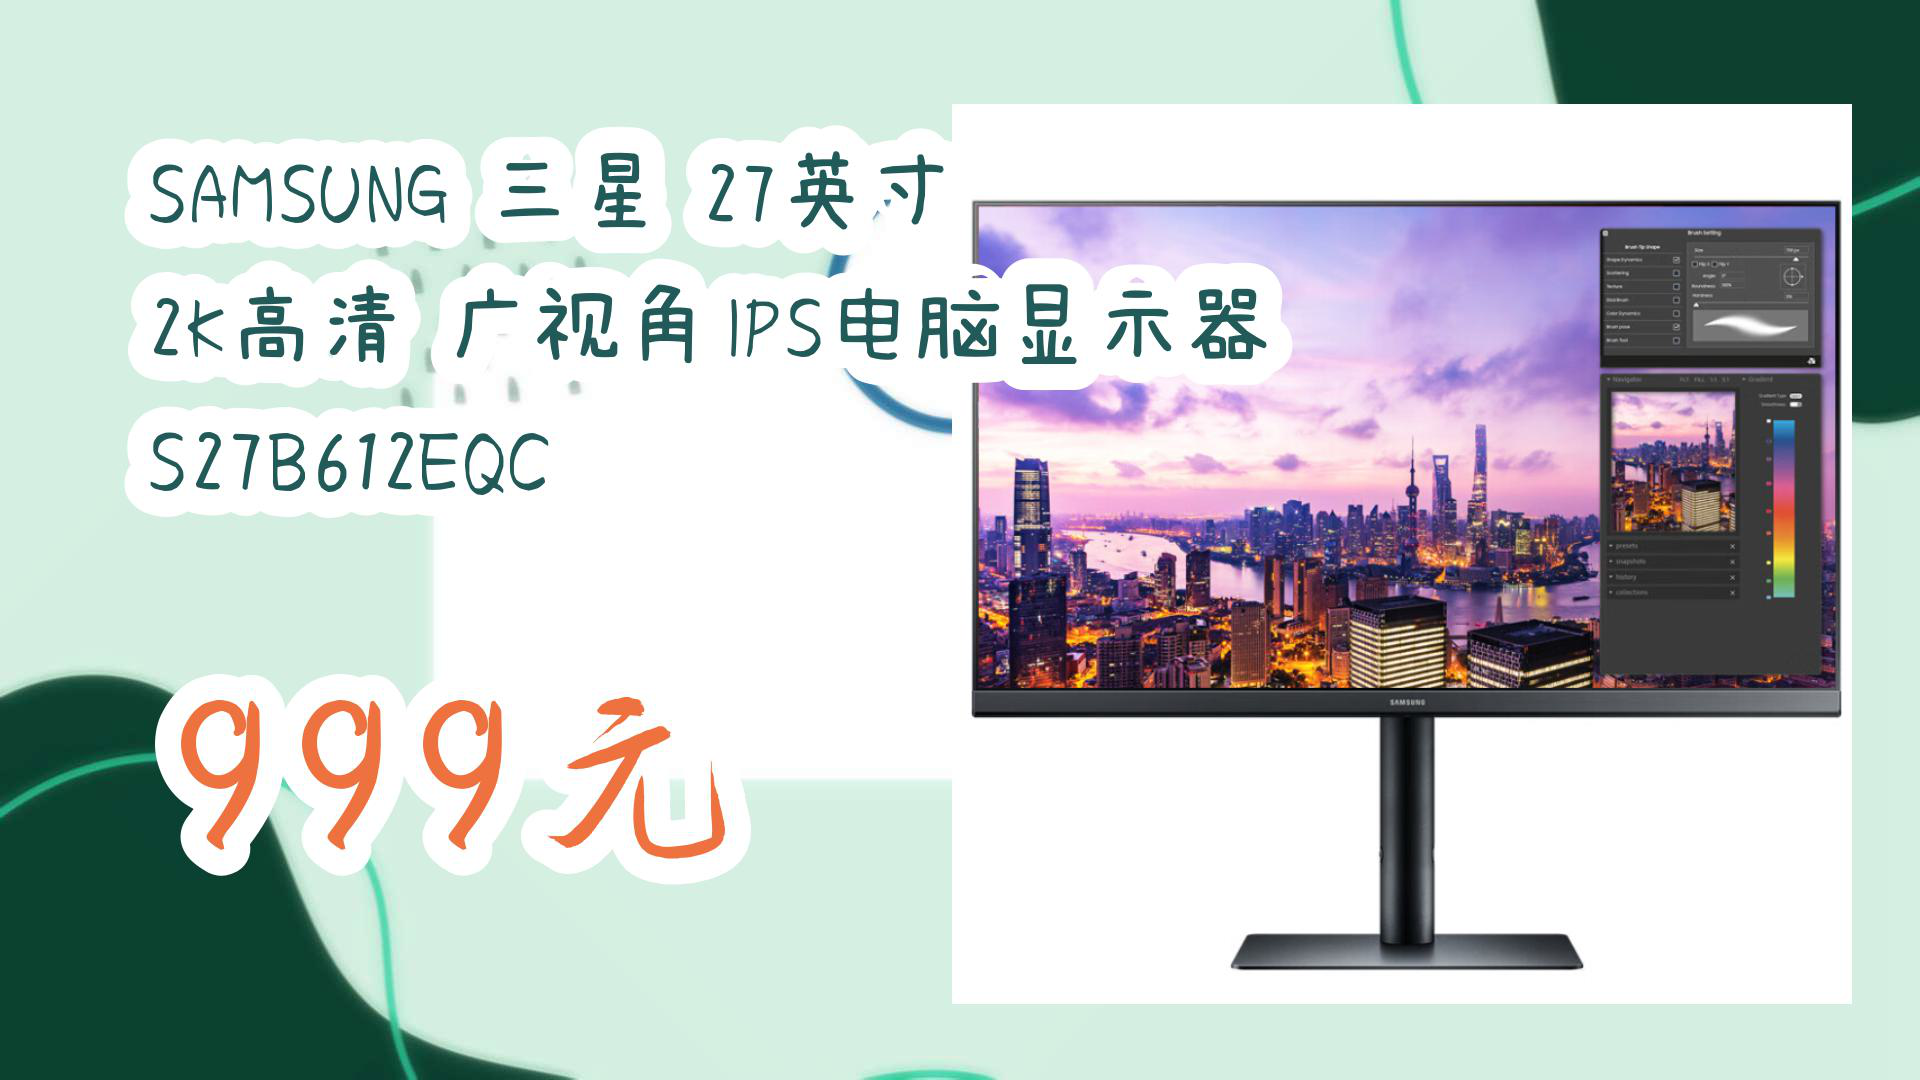 【京东】SAMSUNG 三星 27英寸 2K高清 广视角IPS电脑显示器 S27B612EQC 999元